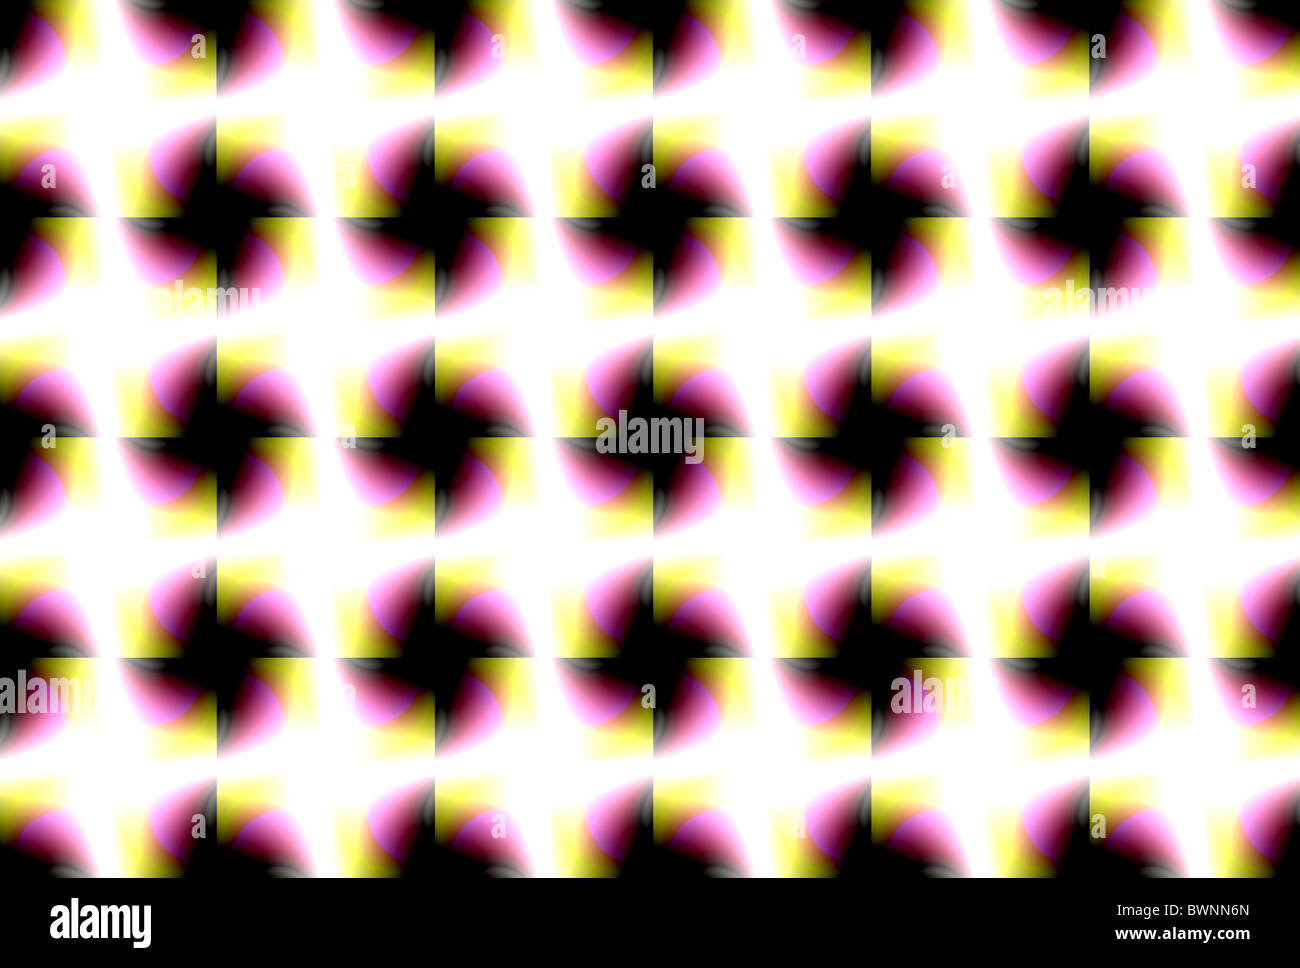 Immagine Abstraktyy come quadrati su uno sfondo luminoso Foto Stock